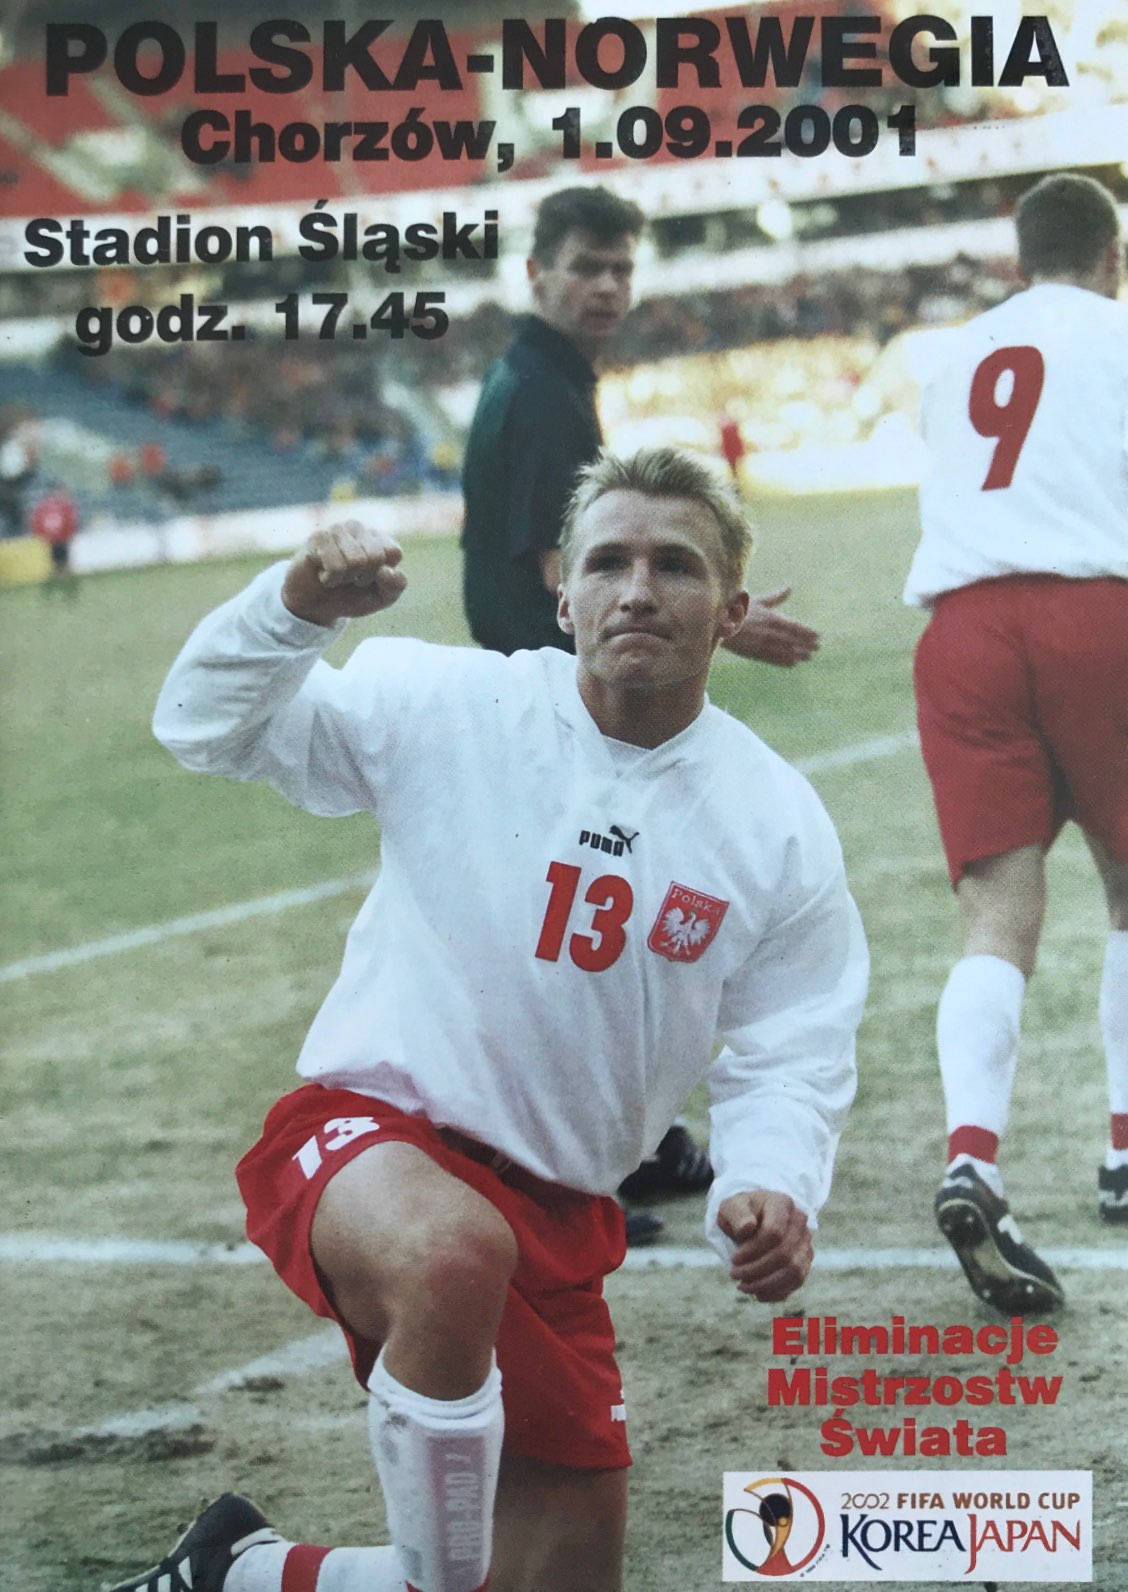 Program meczowy Polska - Norwegia 3:0 (01.09.2001).